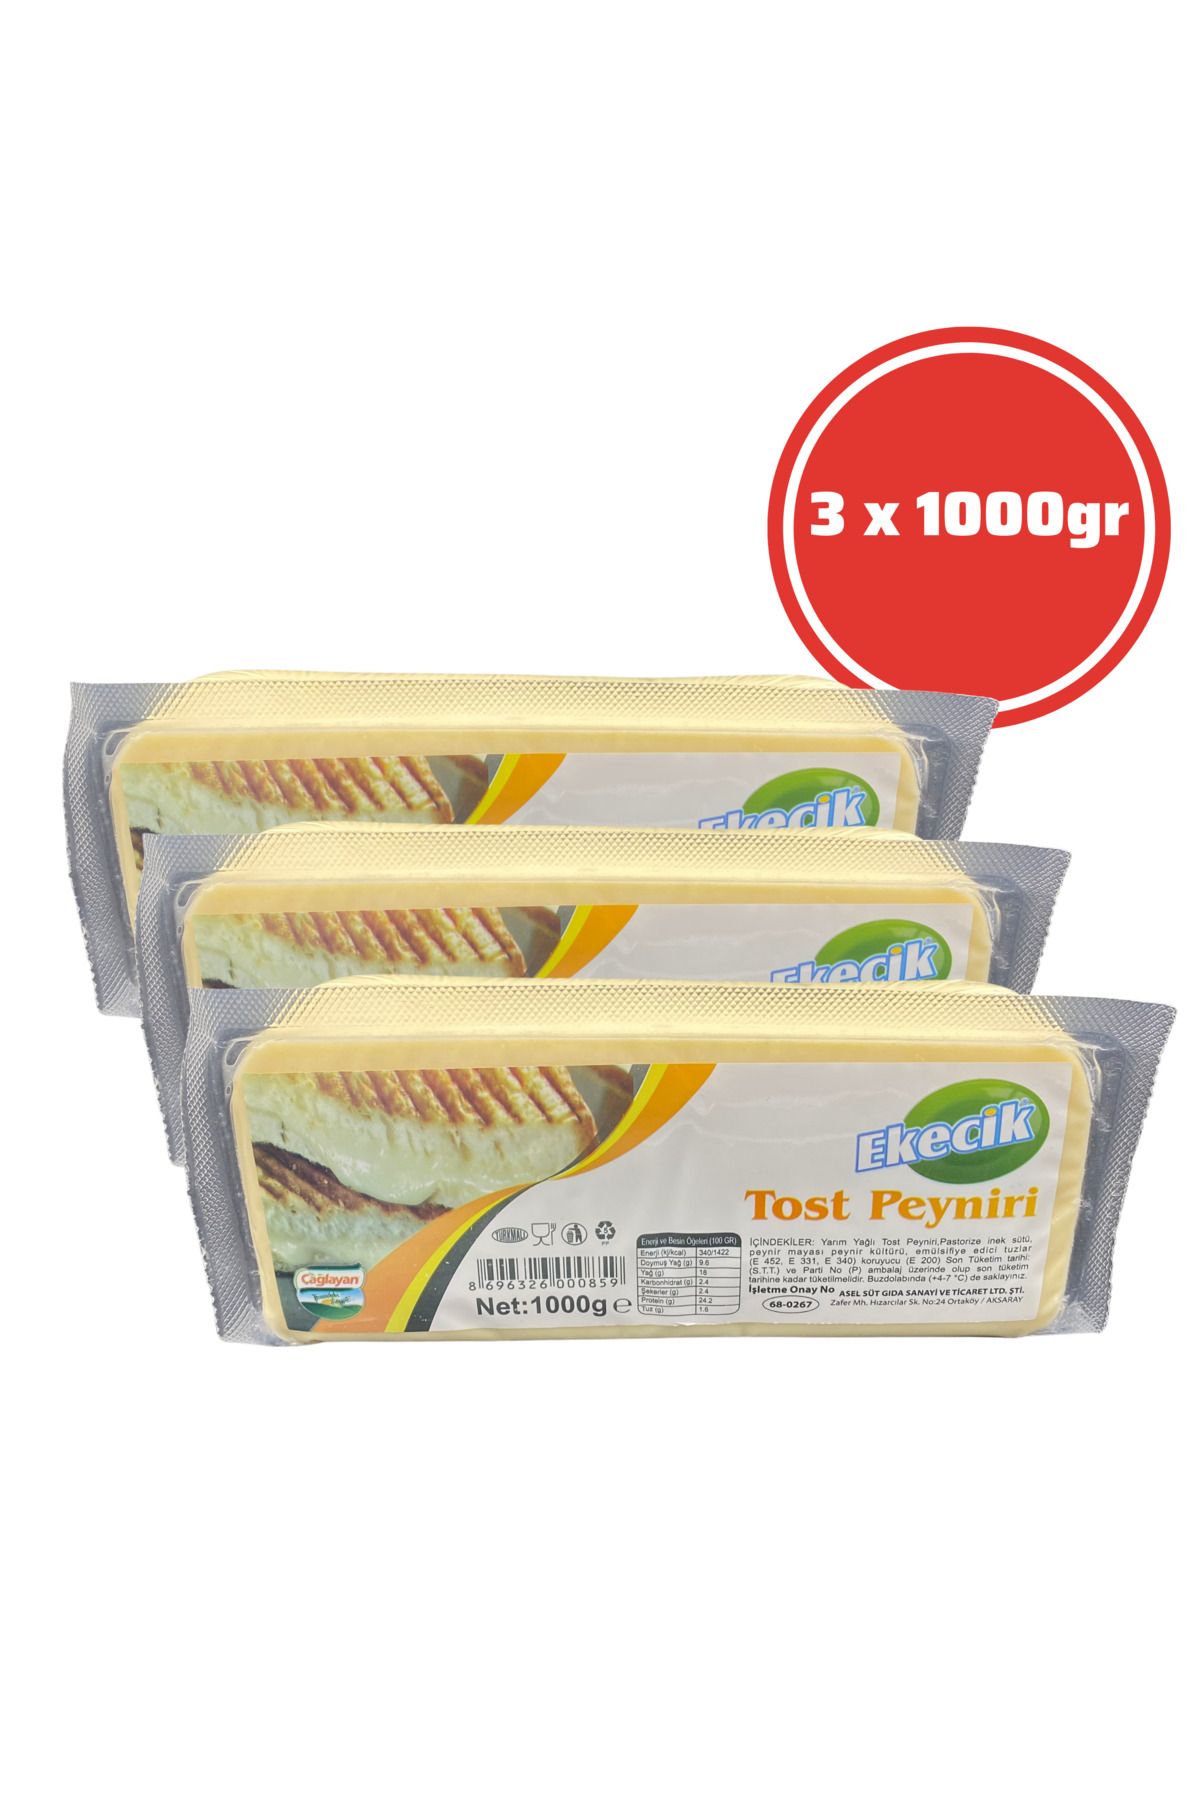 Tekin Gurme Ekecik Tost Kaşar Peyniri 1000 gr 3'lü Paket ( 3 Kg )